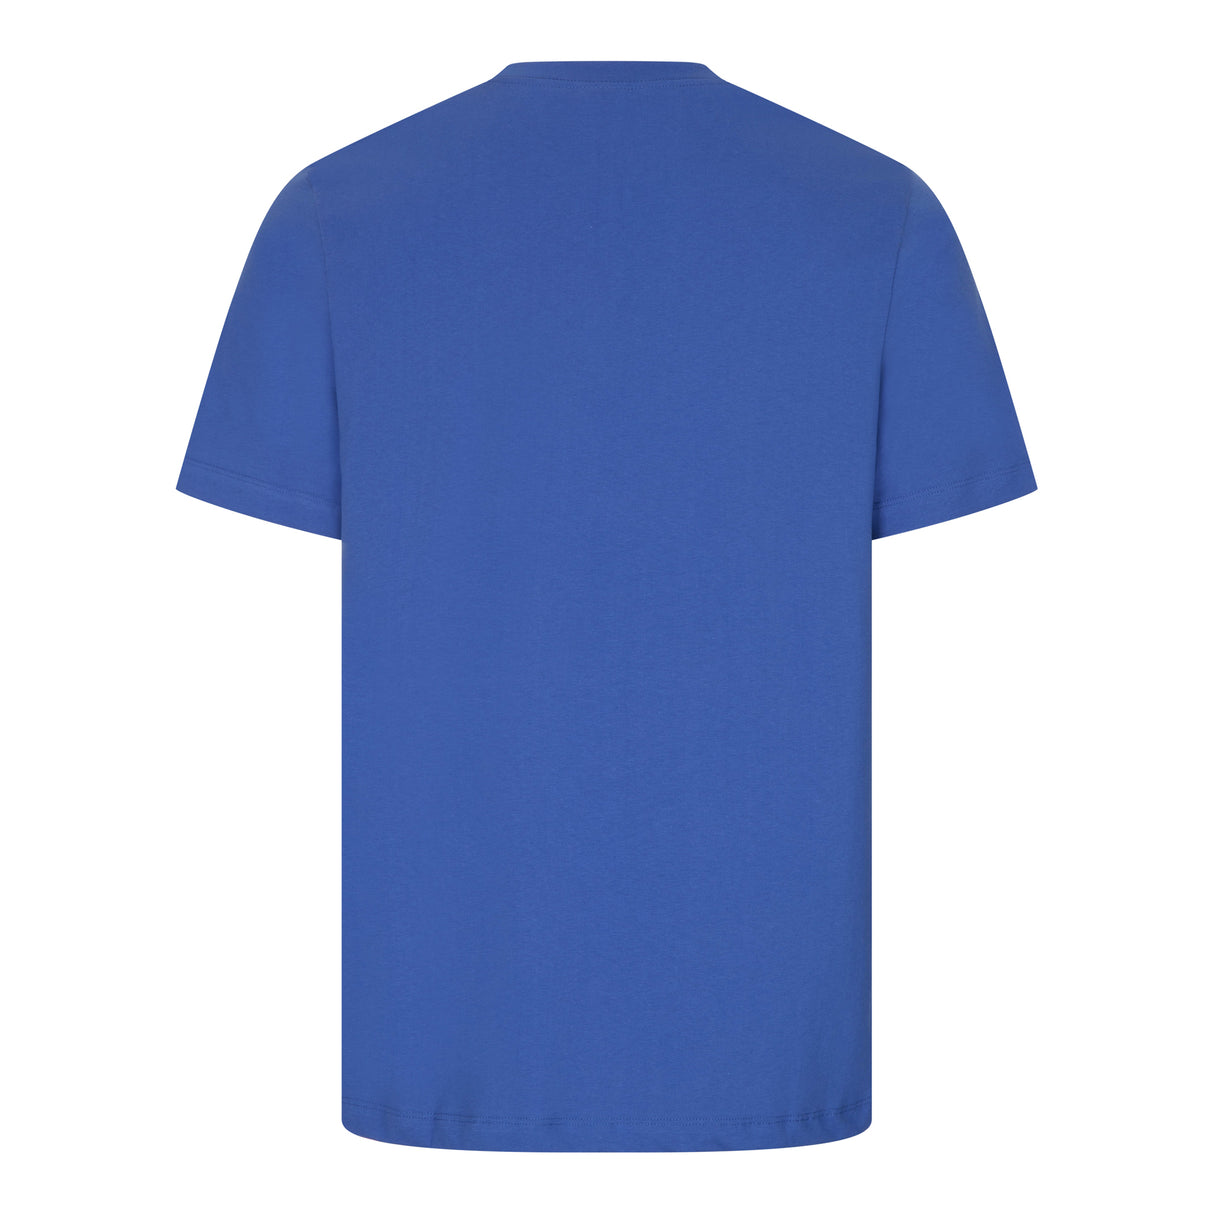 Nike Sportswear Men’s Swoosh Logo T-Shirt in Blue